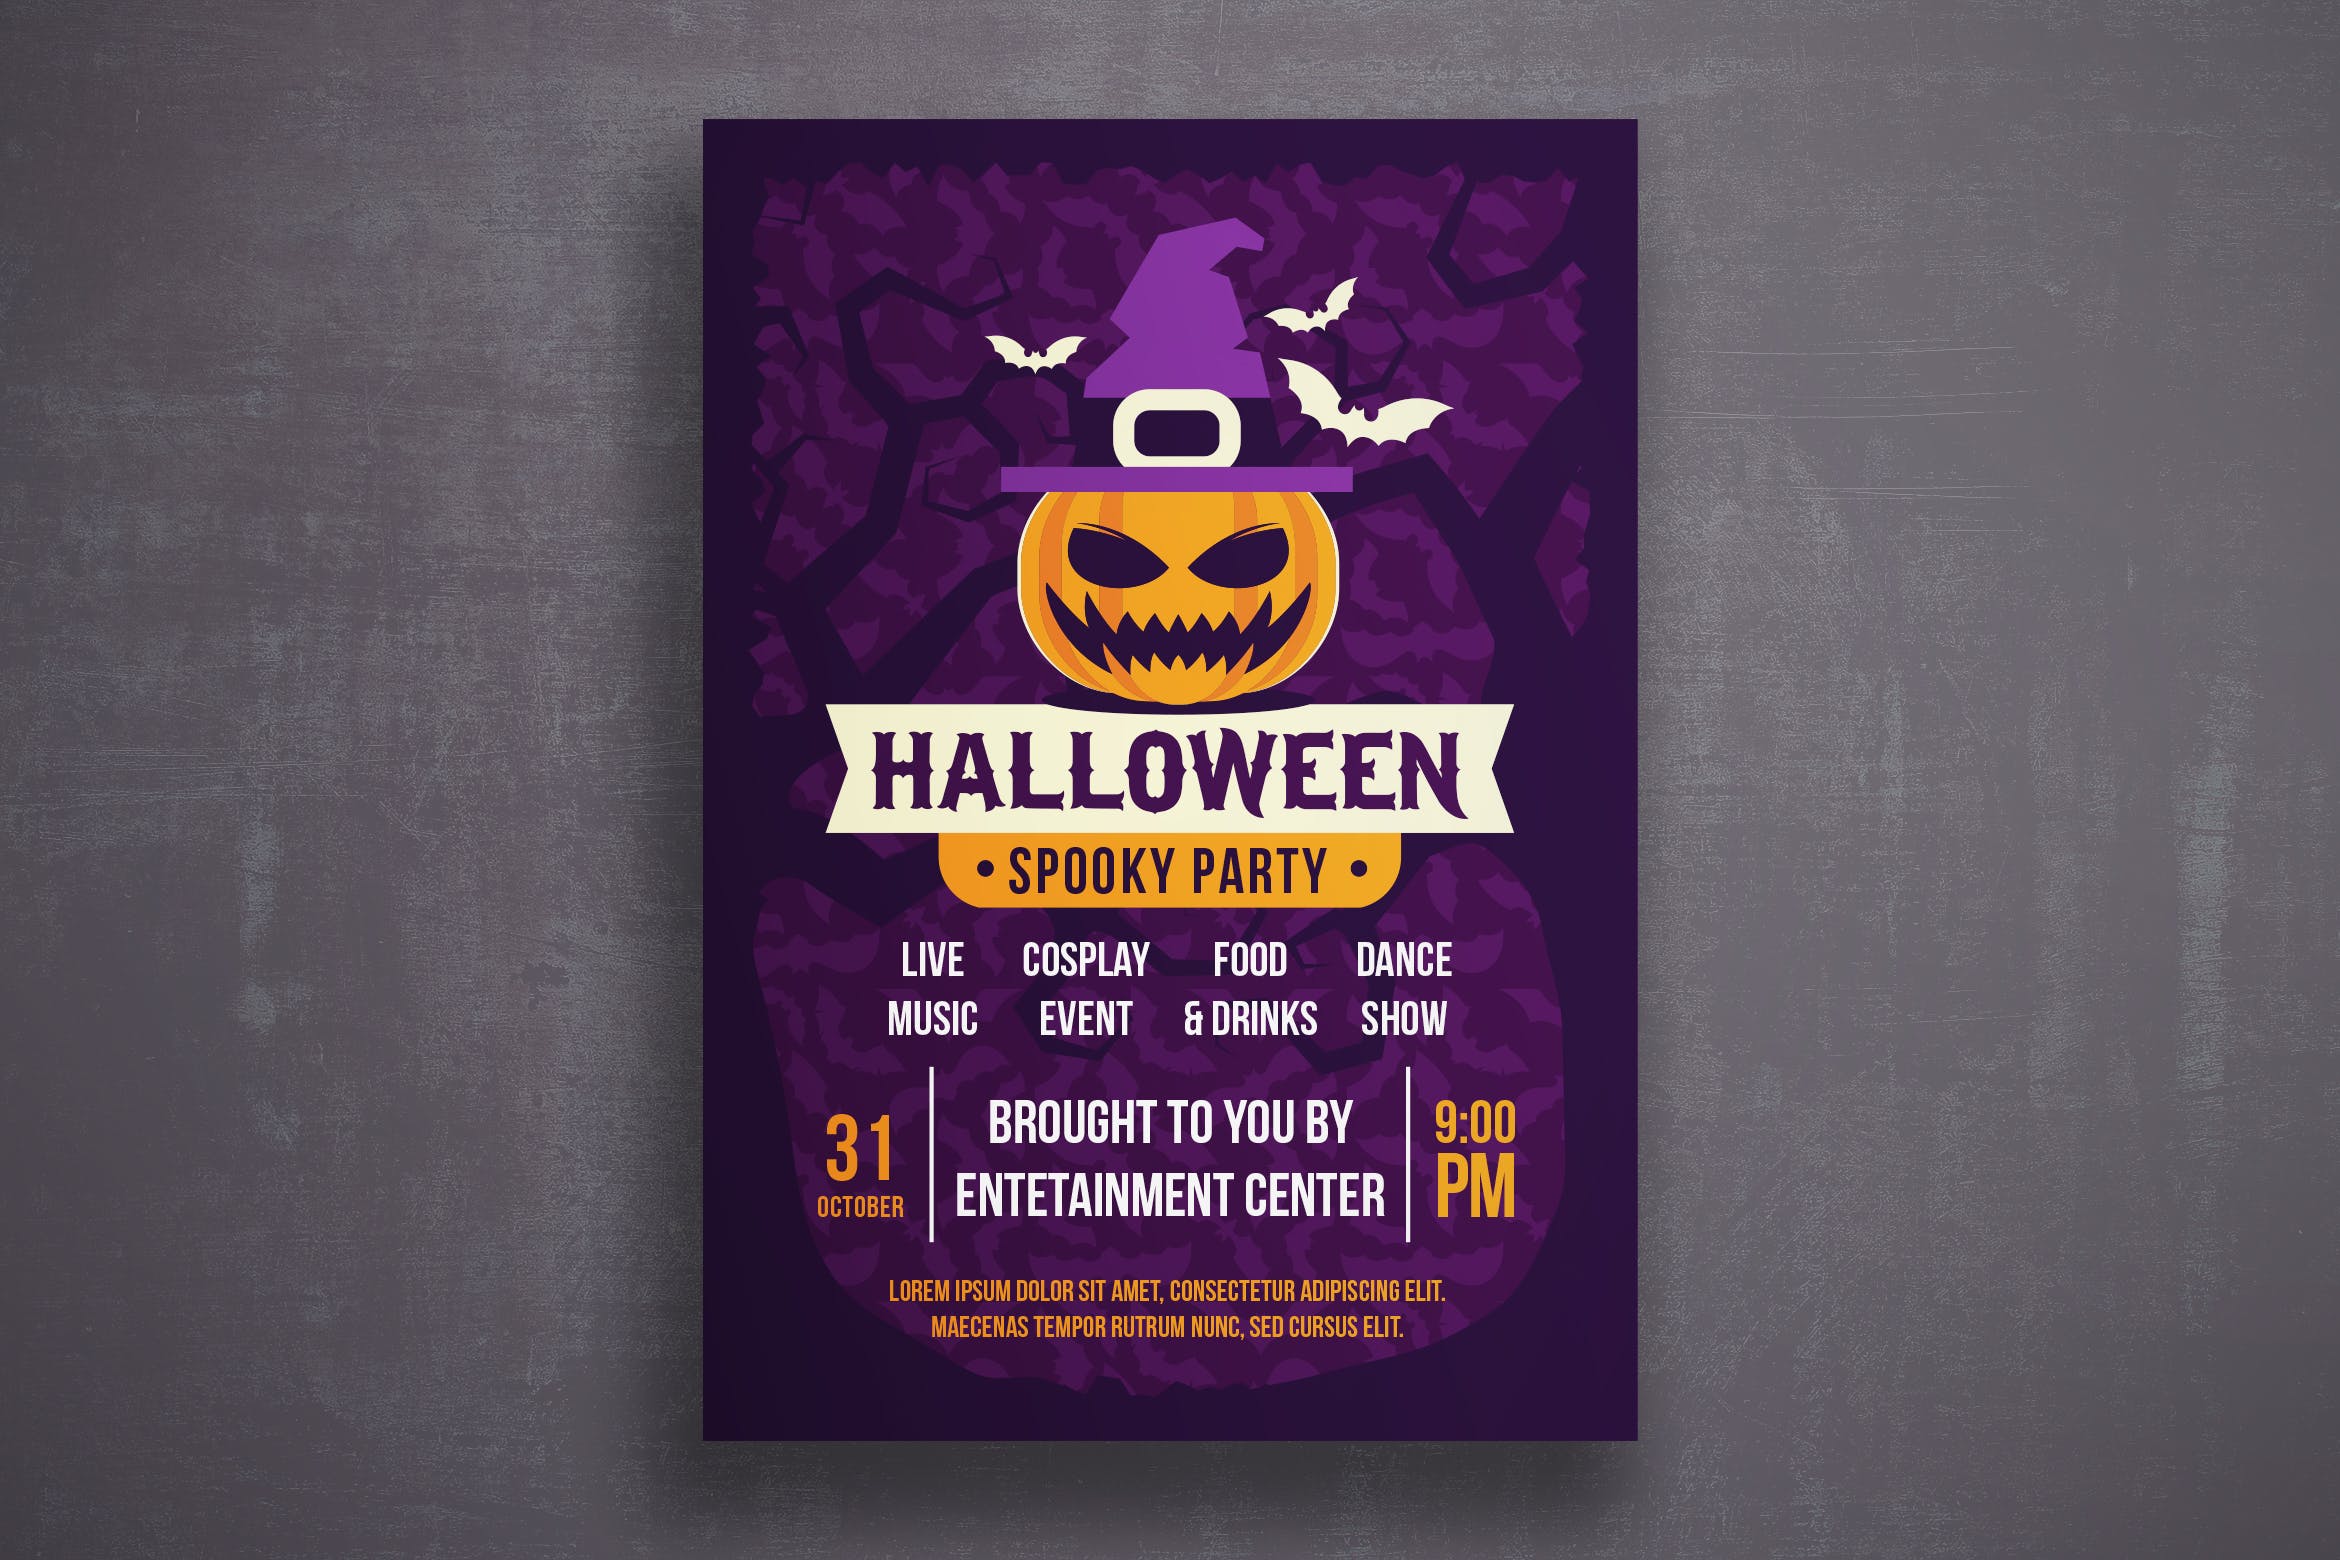 万圣节恐怖之夜活动邀请海报传单第一素材精选PSD模板v4 Halloween flyer template插图